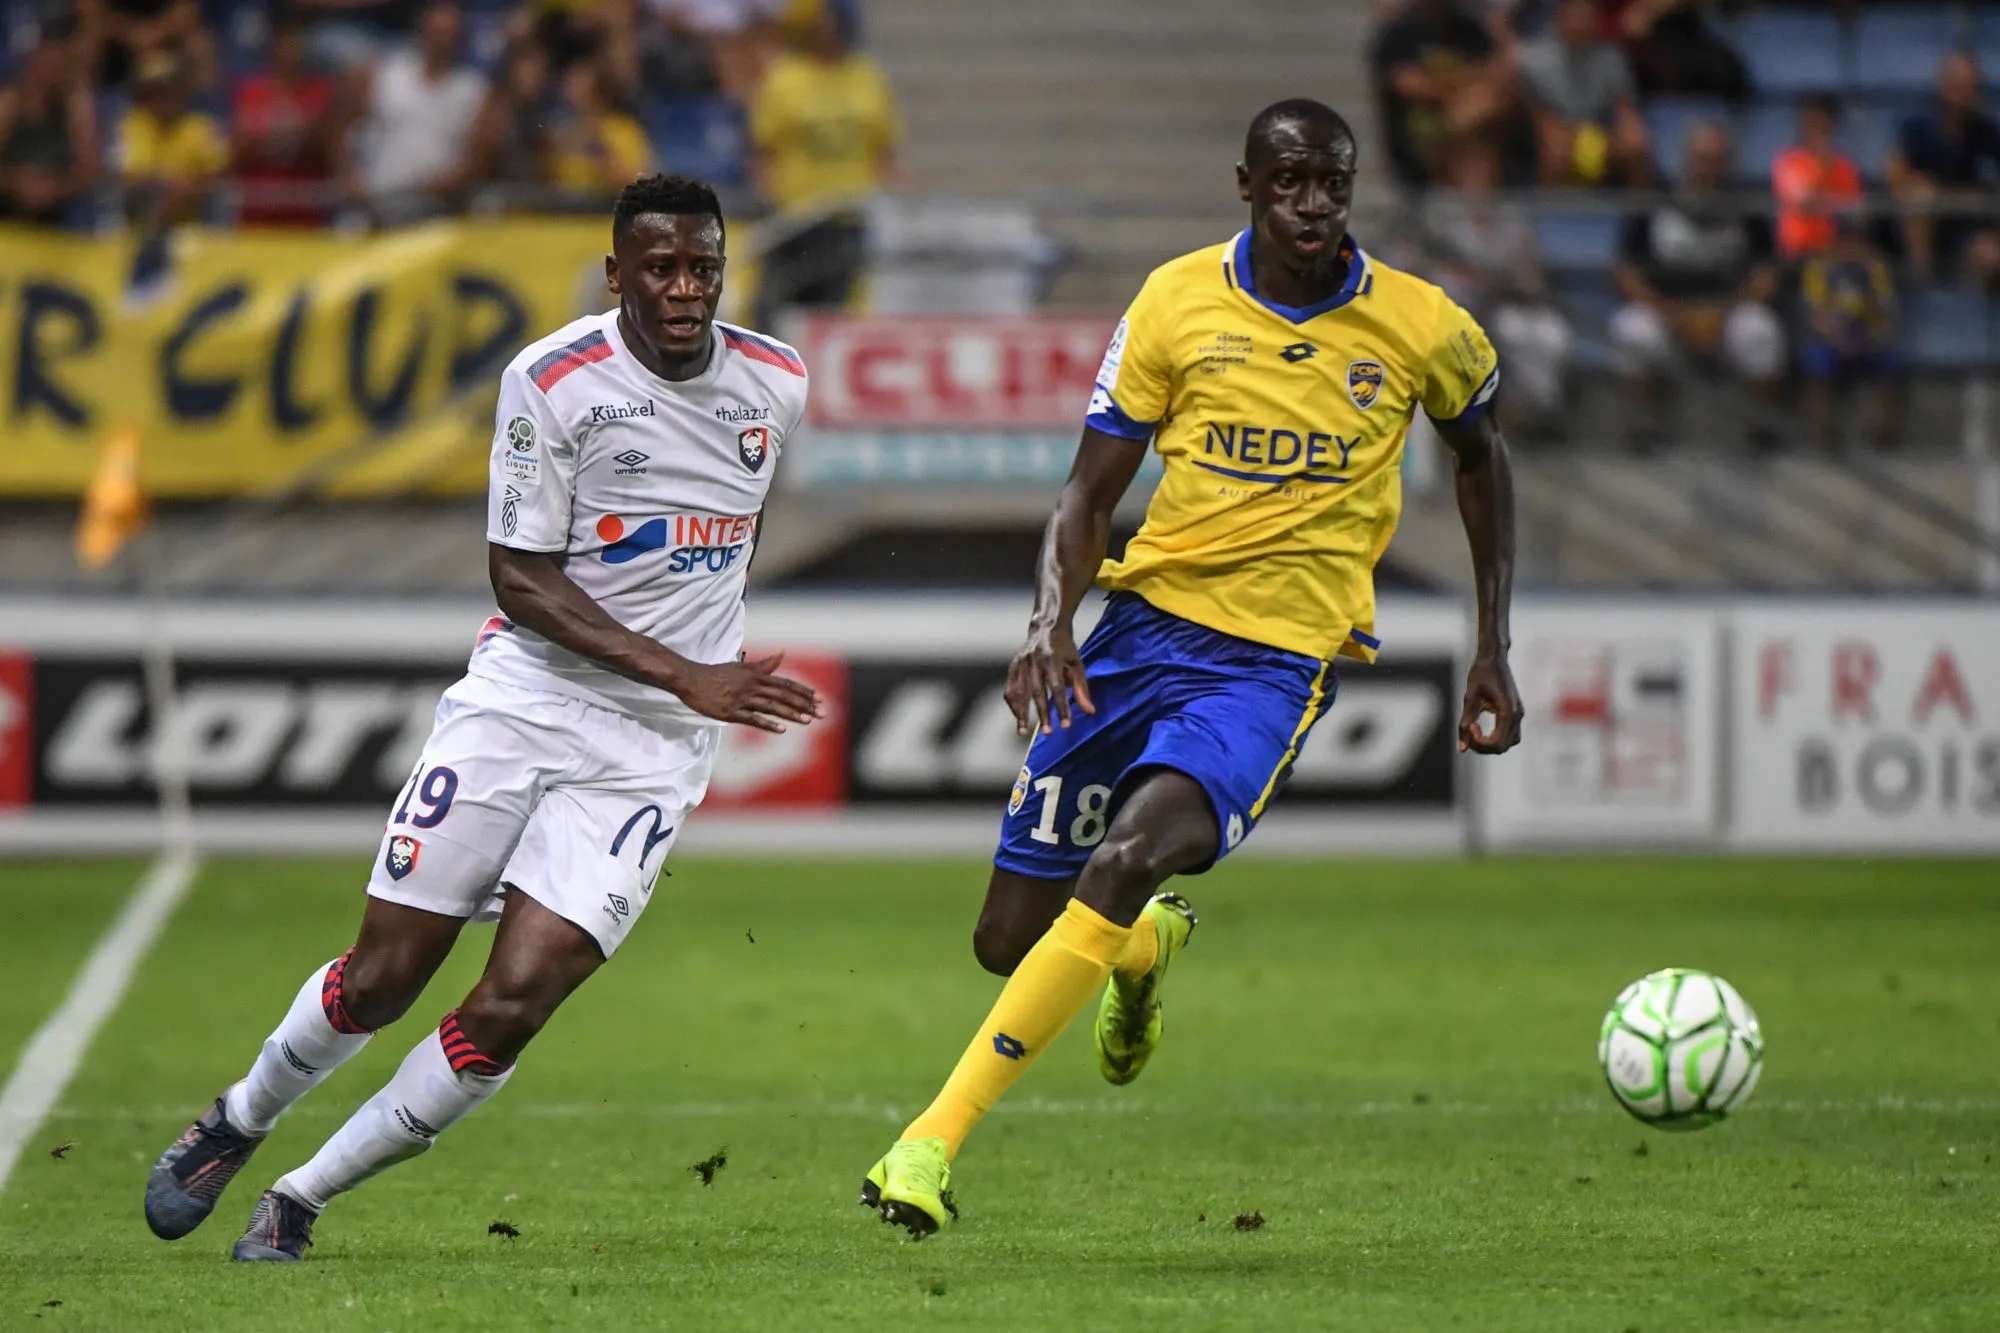 Pronostic Sochaux Niort : Analyse, prono et cotes du match de Ligue 2